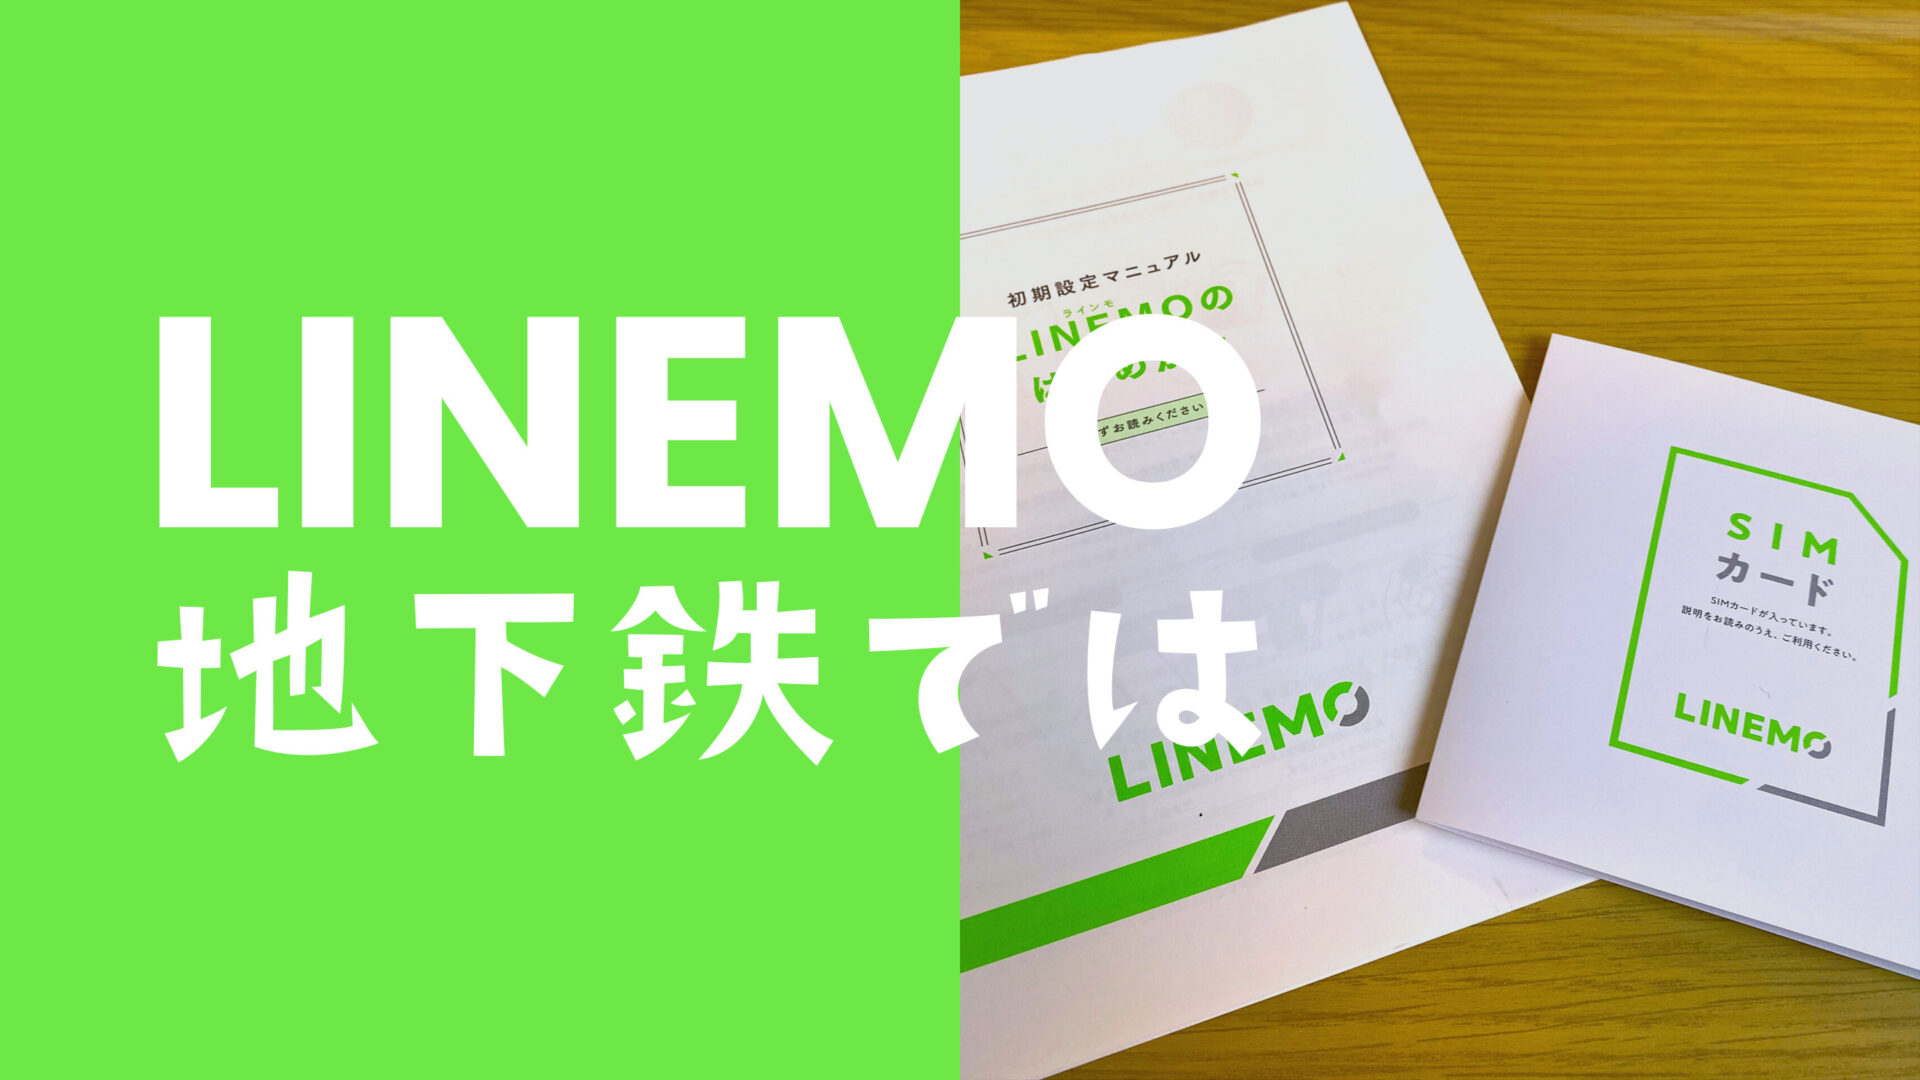 LINEMO(ラインモ)は地下鉄で電波は？東京メトロ路線網で実測。のサムネイル画像